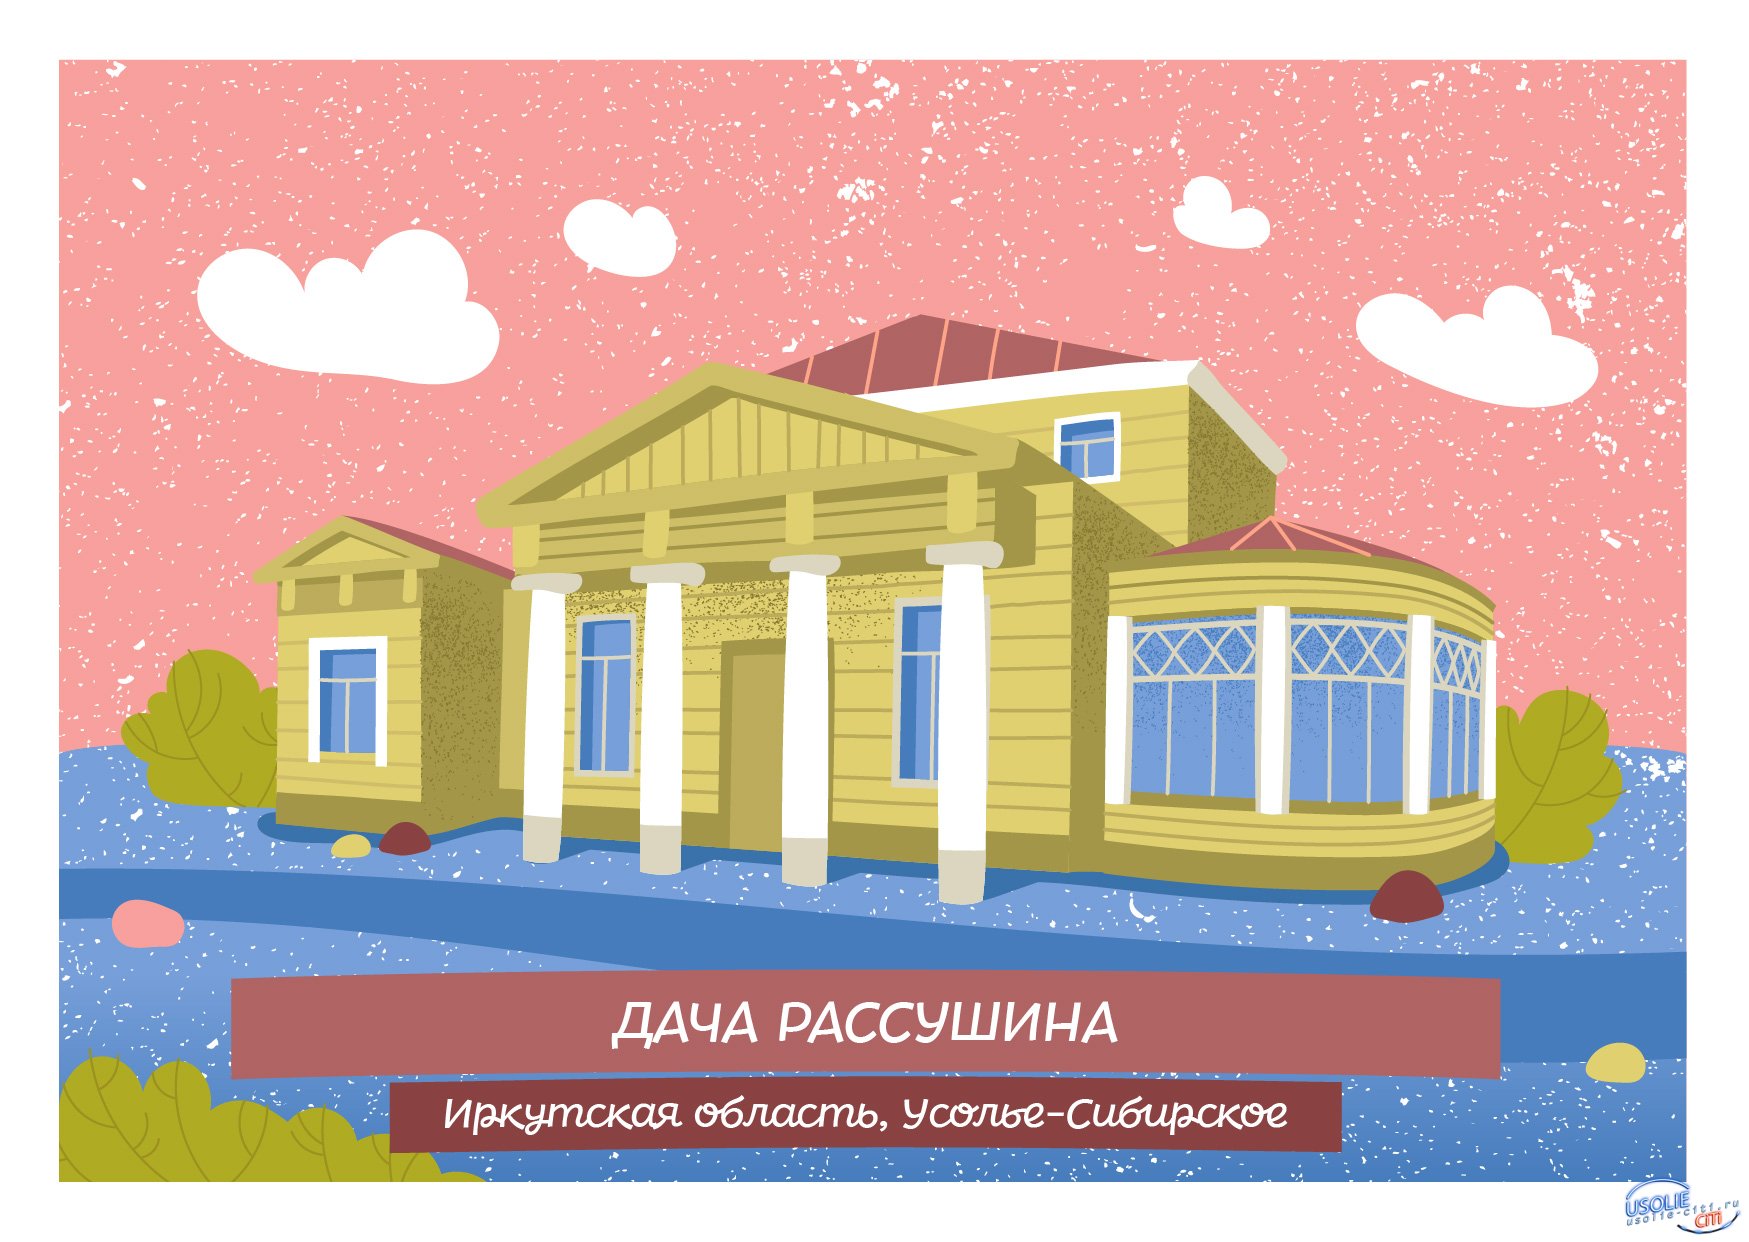 Дача Рассушина в Усолье вошла в топ редких архитектурных памятников России